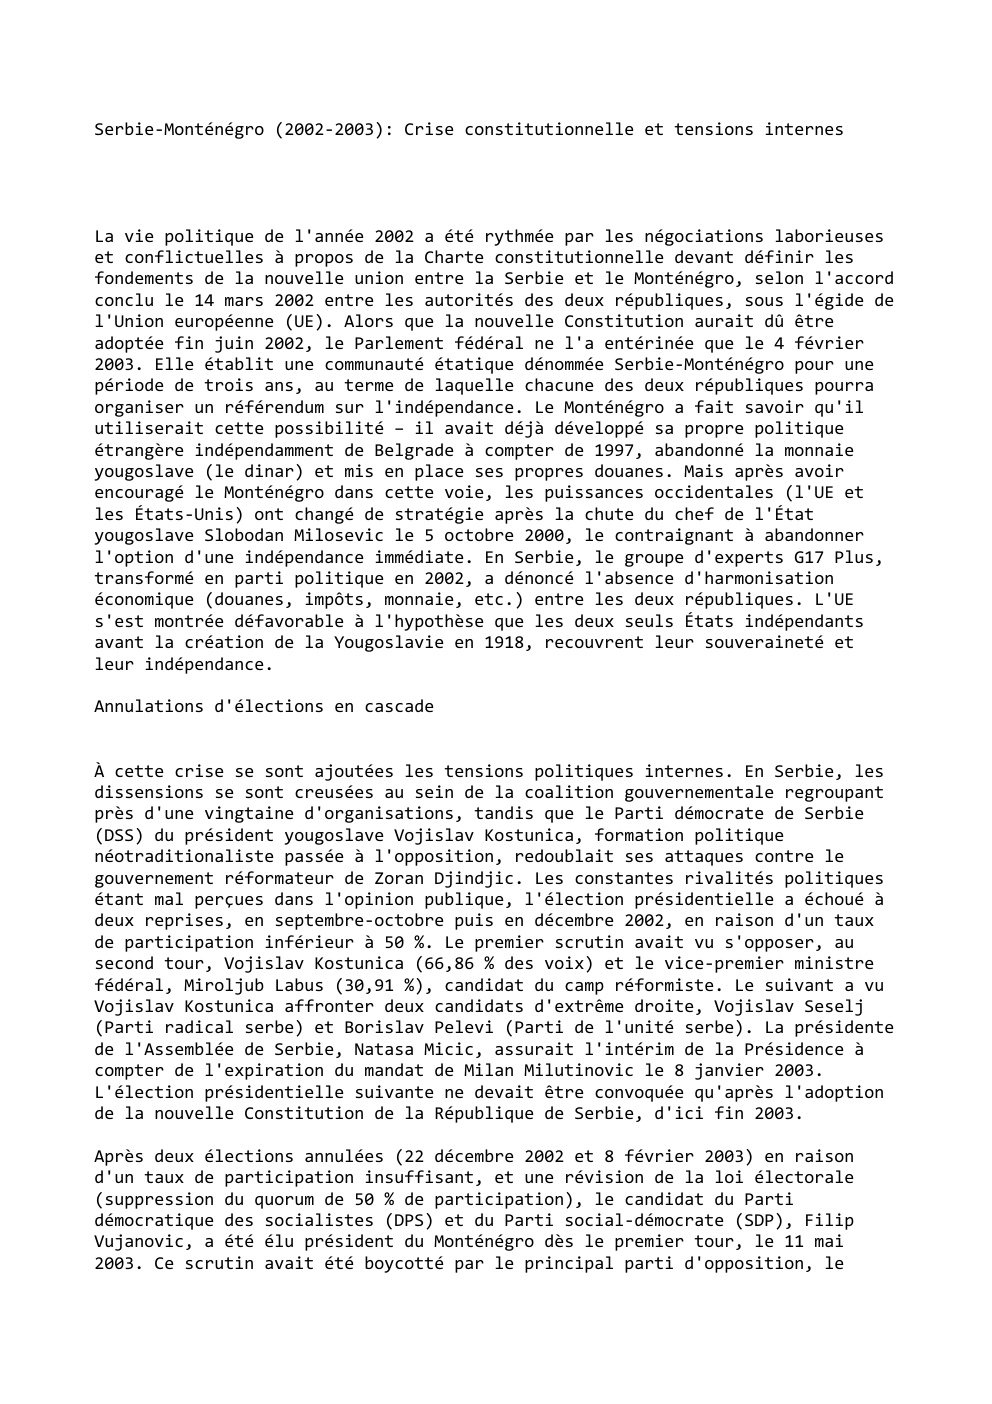 Prévisualisation du document Serbie-Monténégro (2002-2003): Crise constitutionnelle et tensions internes

La vie politique de l'année 2002 a été rythmée par les négociations laborieuses...